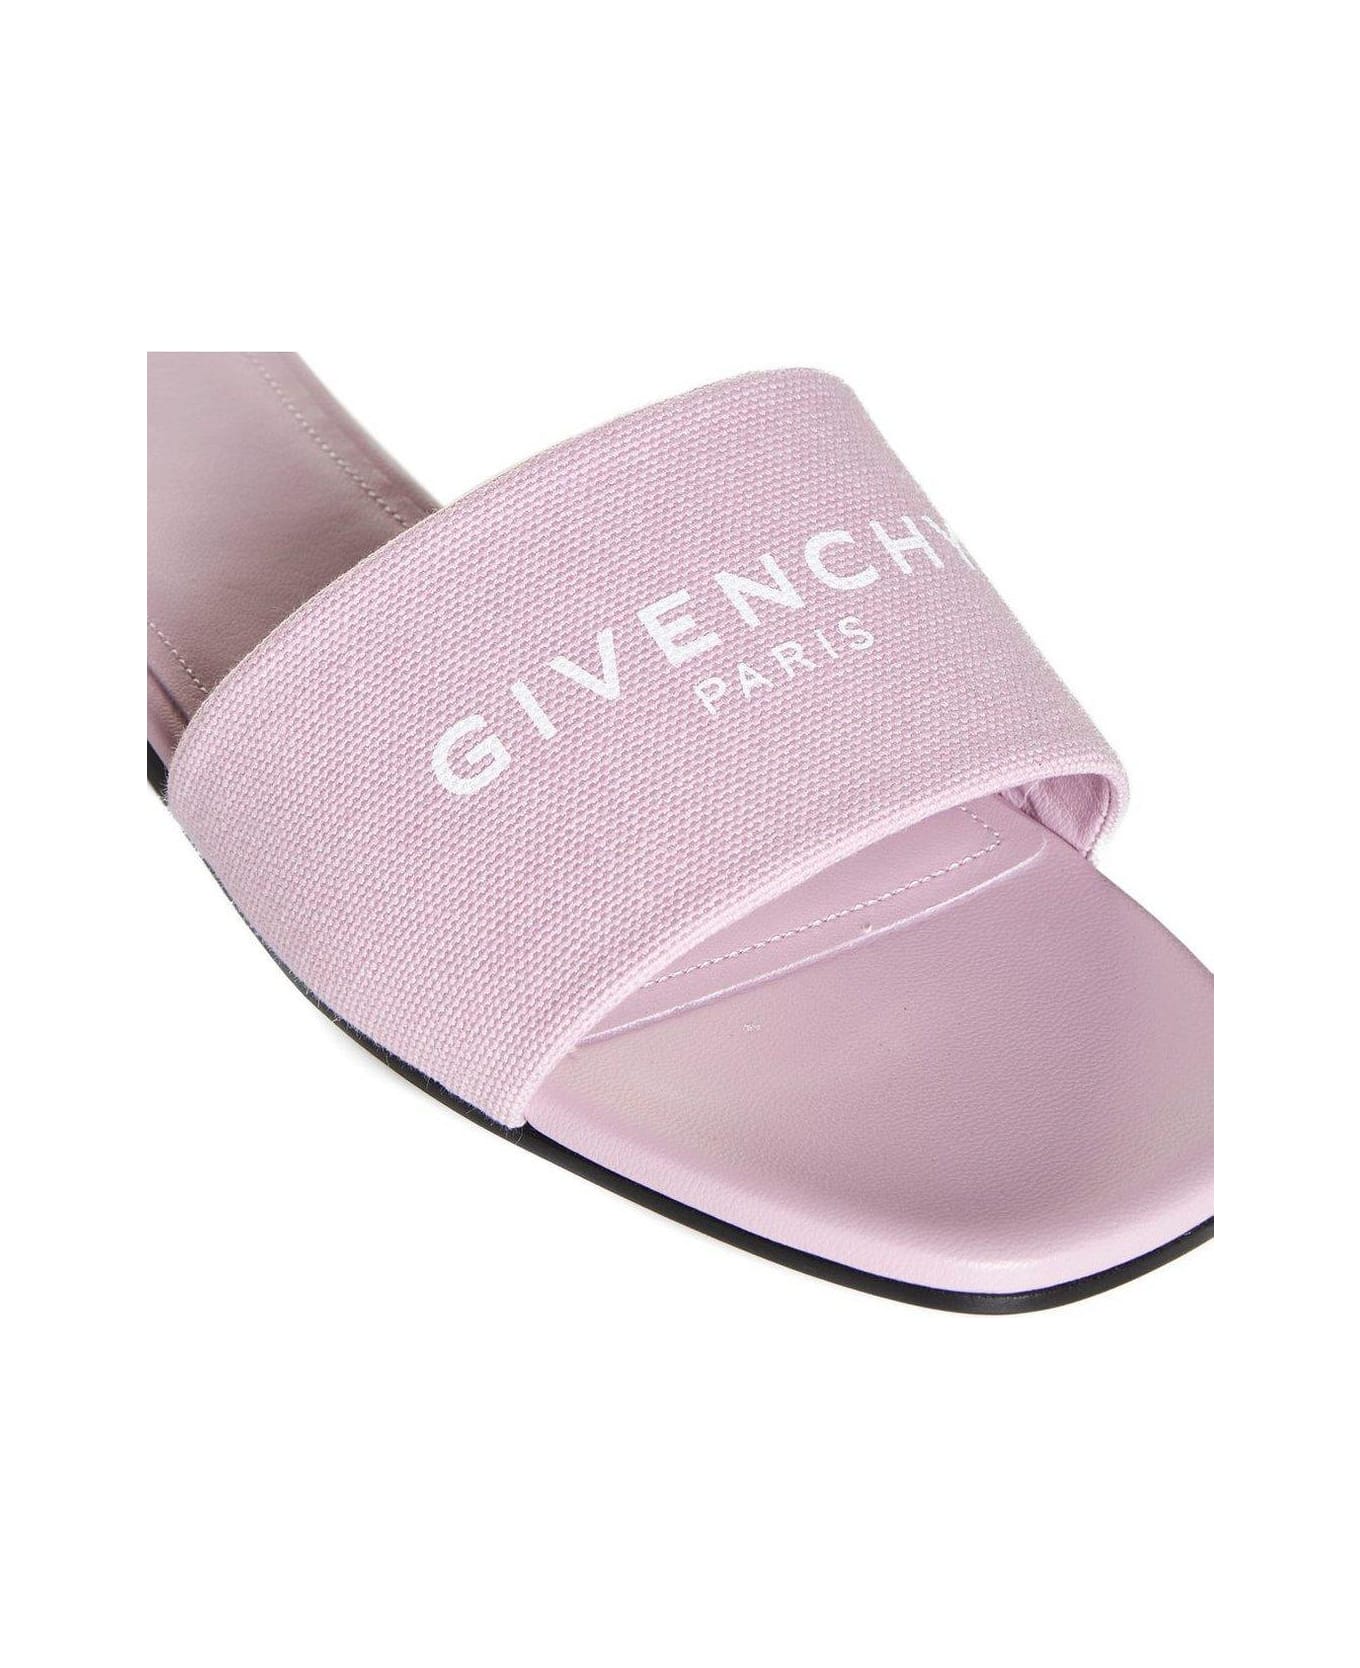 Givenchy Logo Printed Slides - Pink サンダル